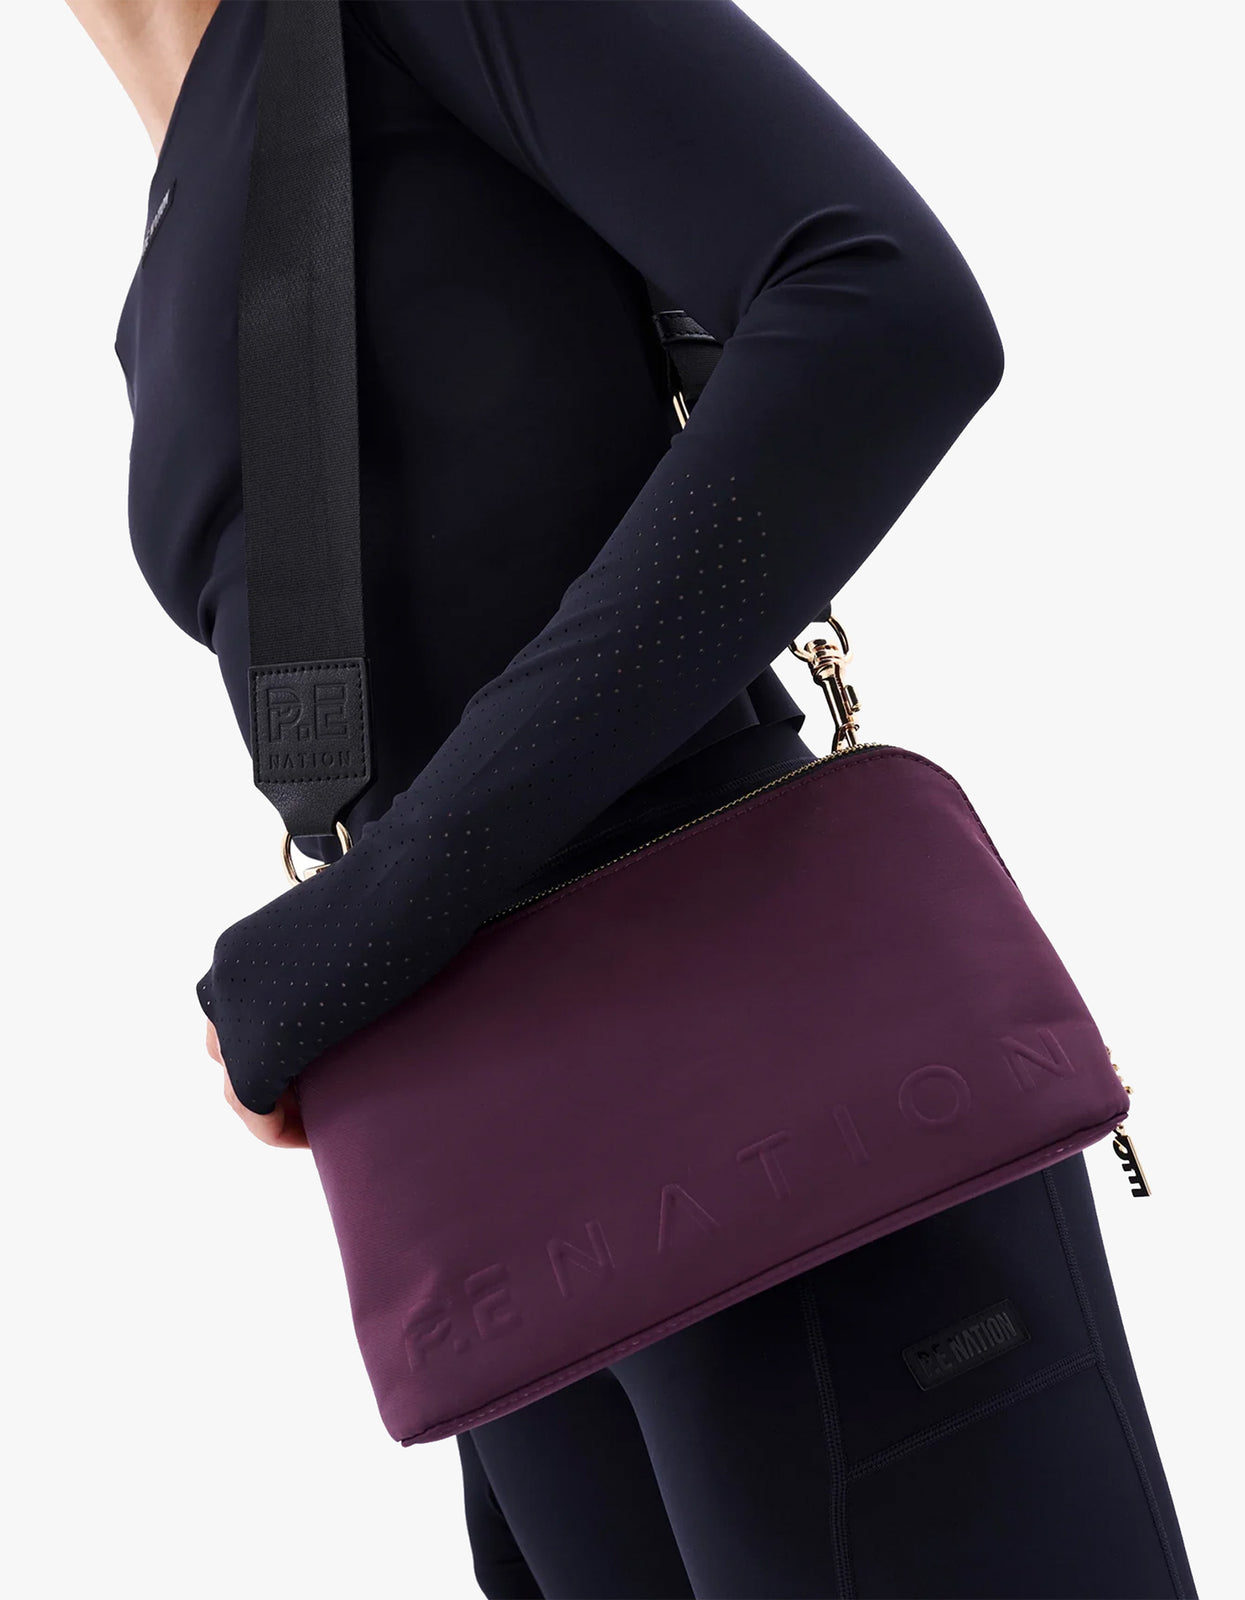 Superette | Chiron Bag - Potent Purple